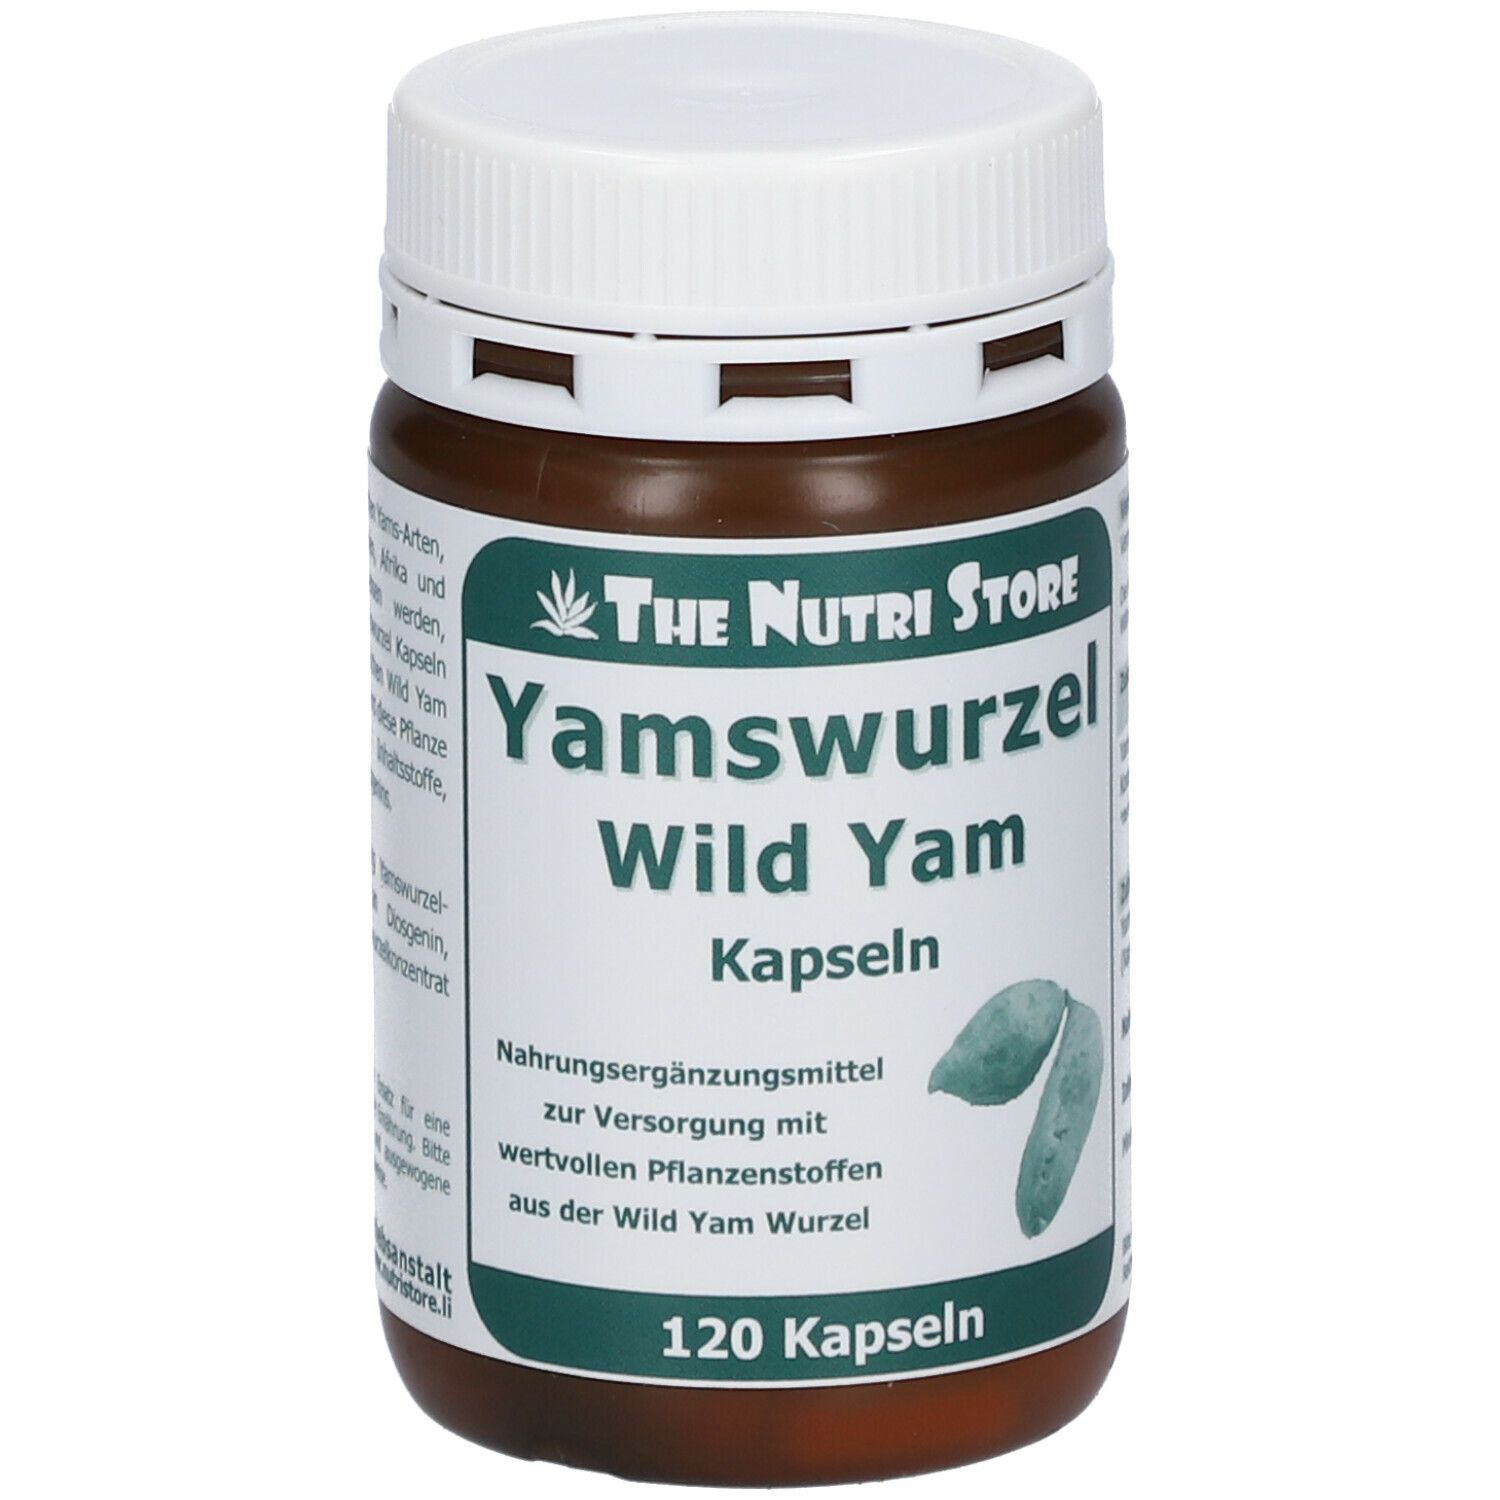 Yamswurzel Wild Yam